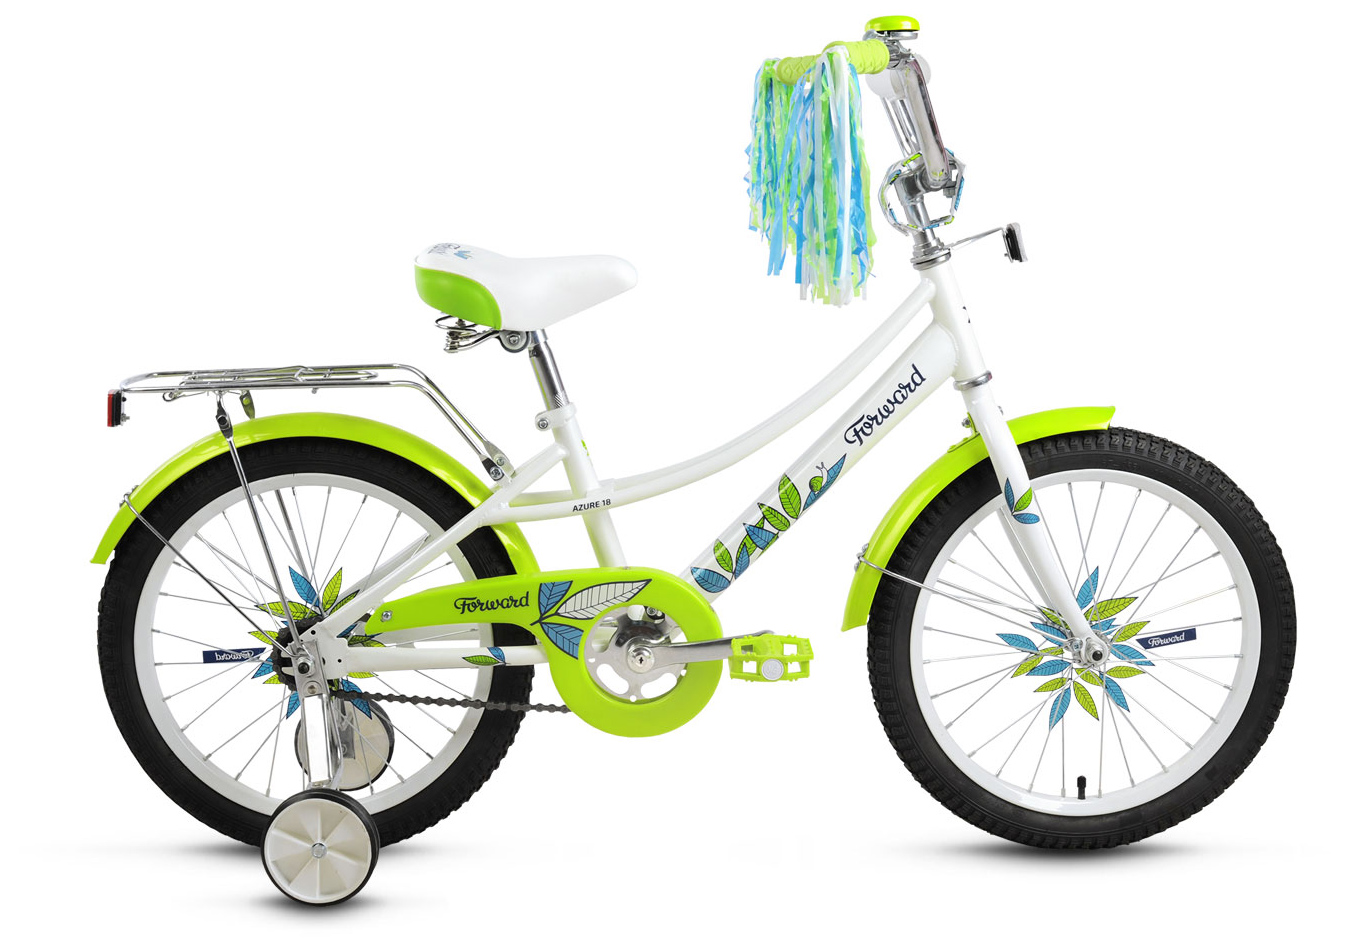  Отзывы о Трехколесный детский велосипед Forward Azure 18 2019